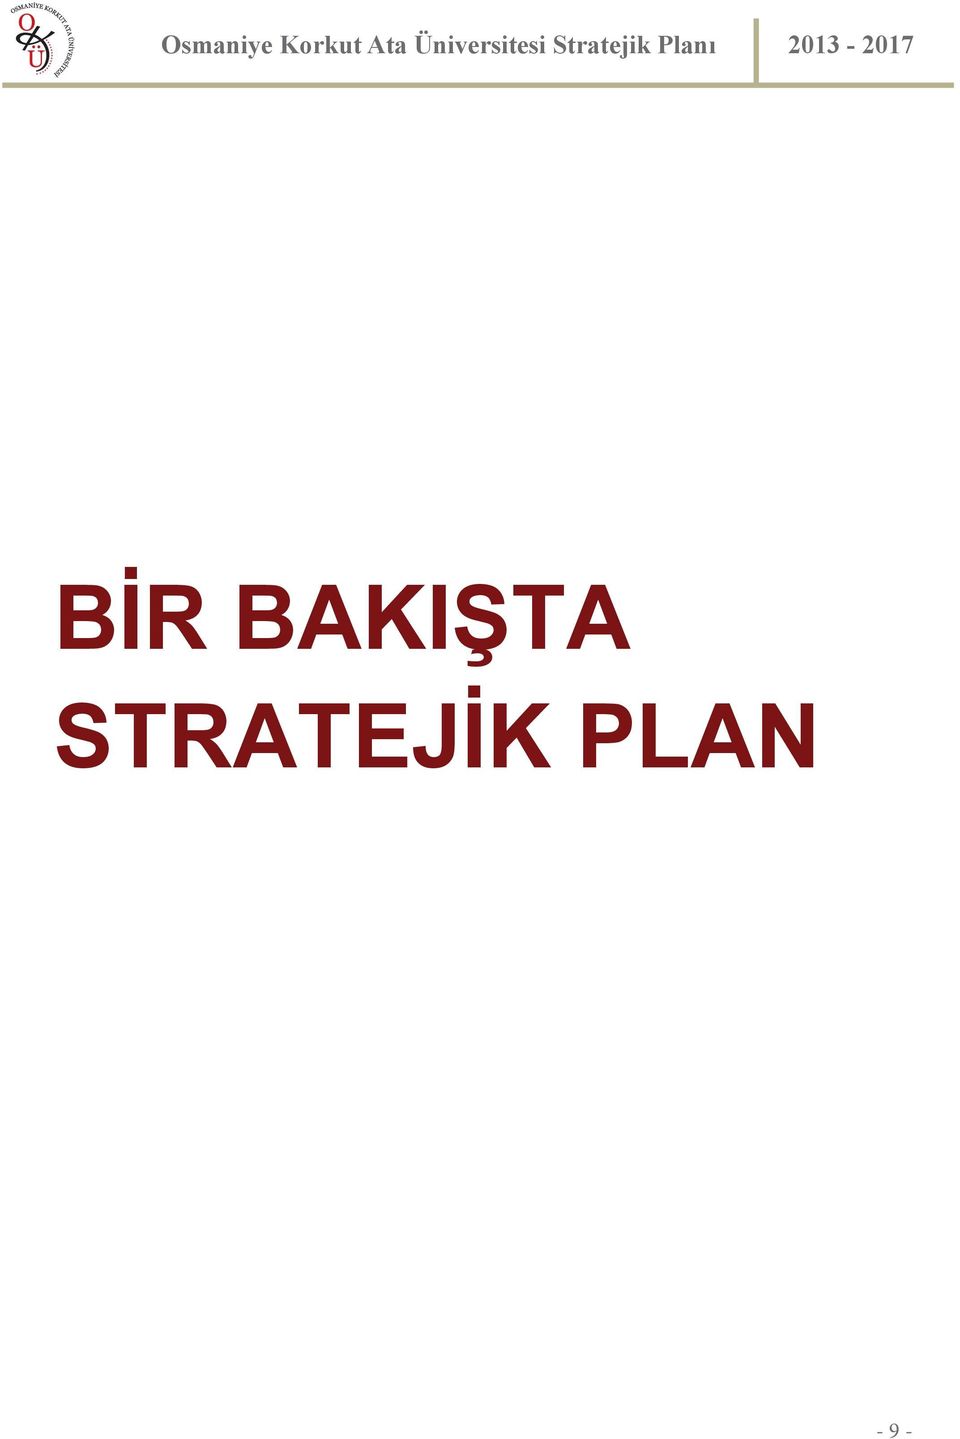 Stratejik Planı 2013